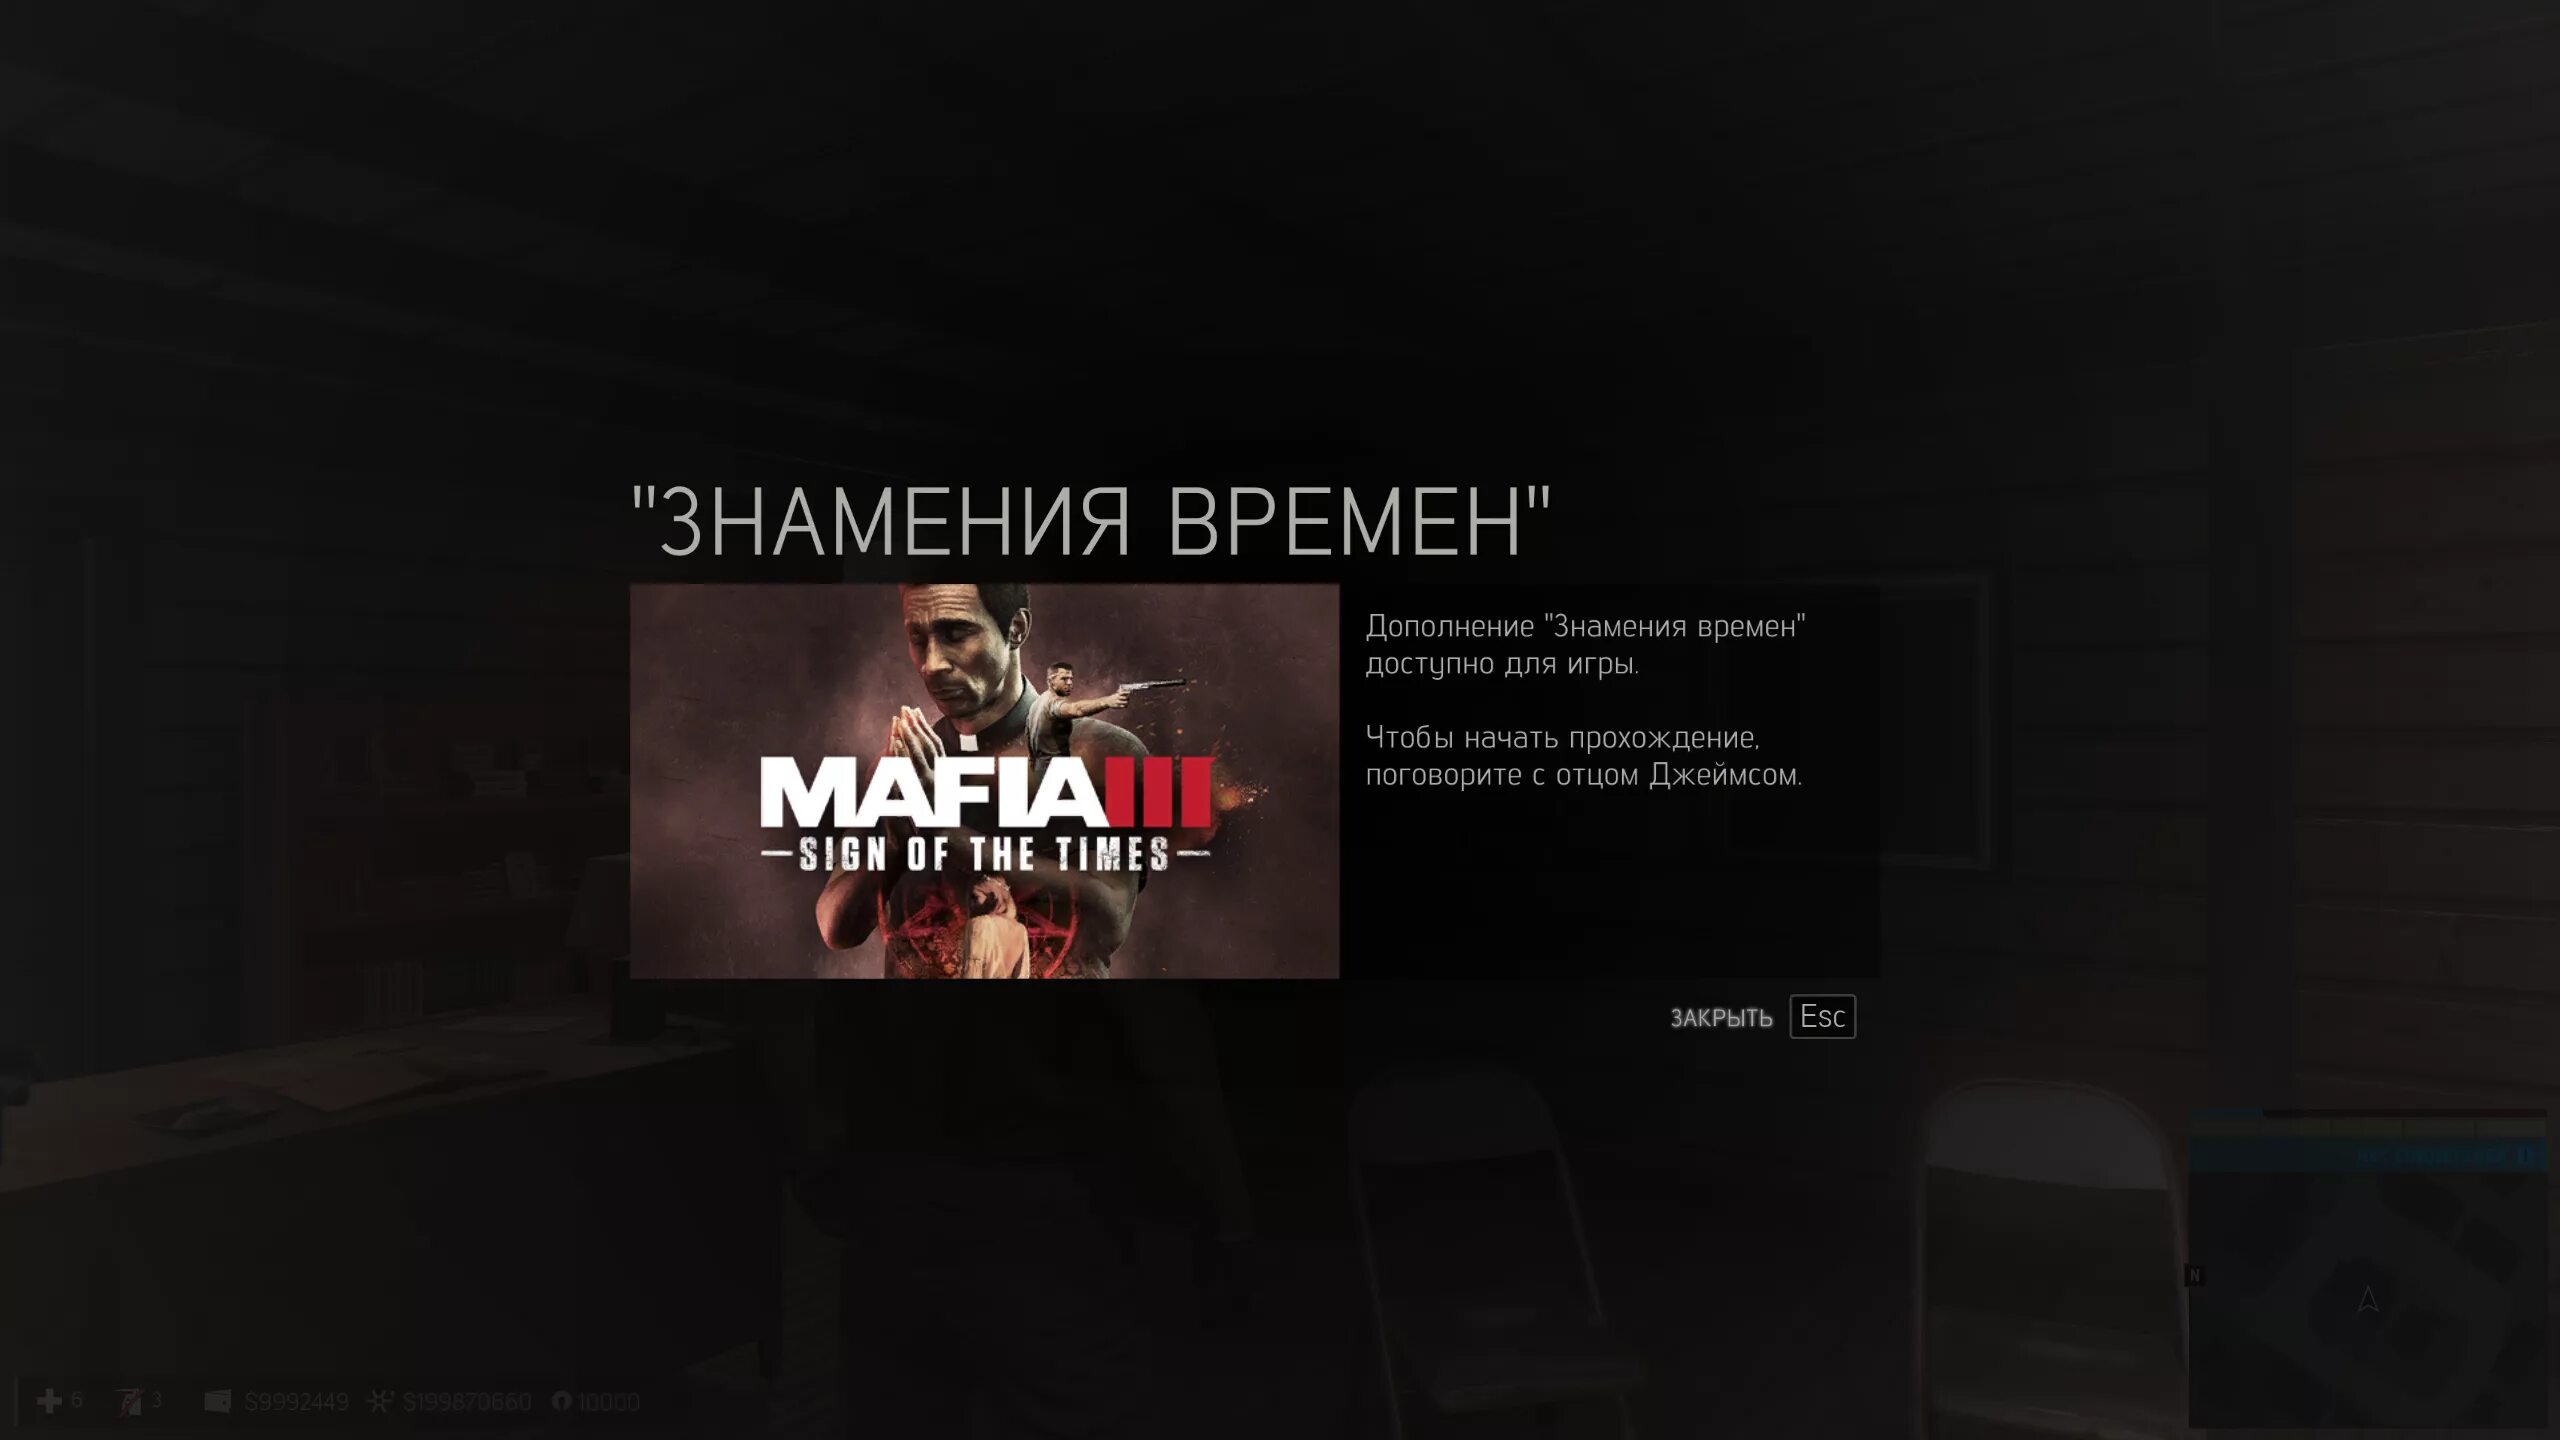 Мафия 3 дополнения. Mafia 3 Definitive Edition системные требования. Мафия 3 Дефинитив эдишн. Mafia 3 системные требования. Мафия дефинитив эдишн системные